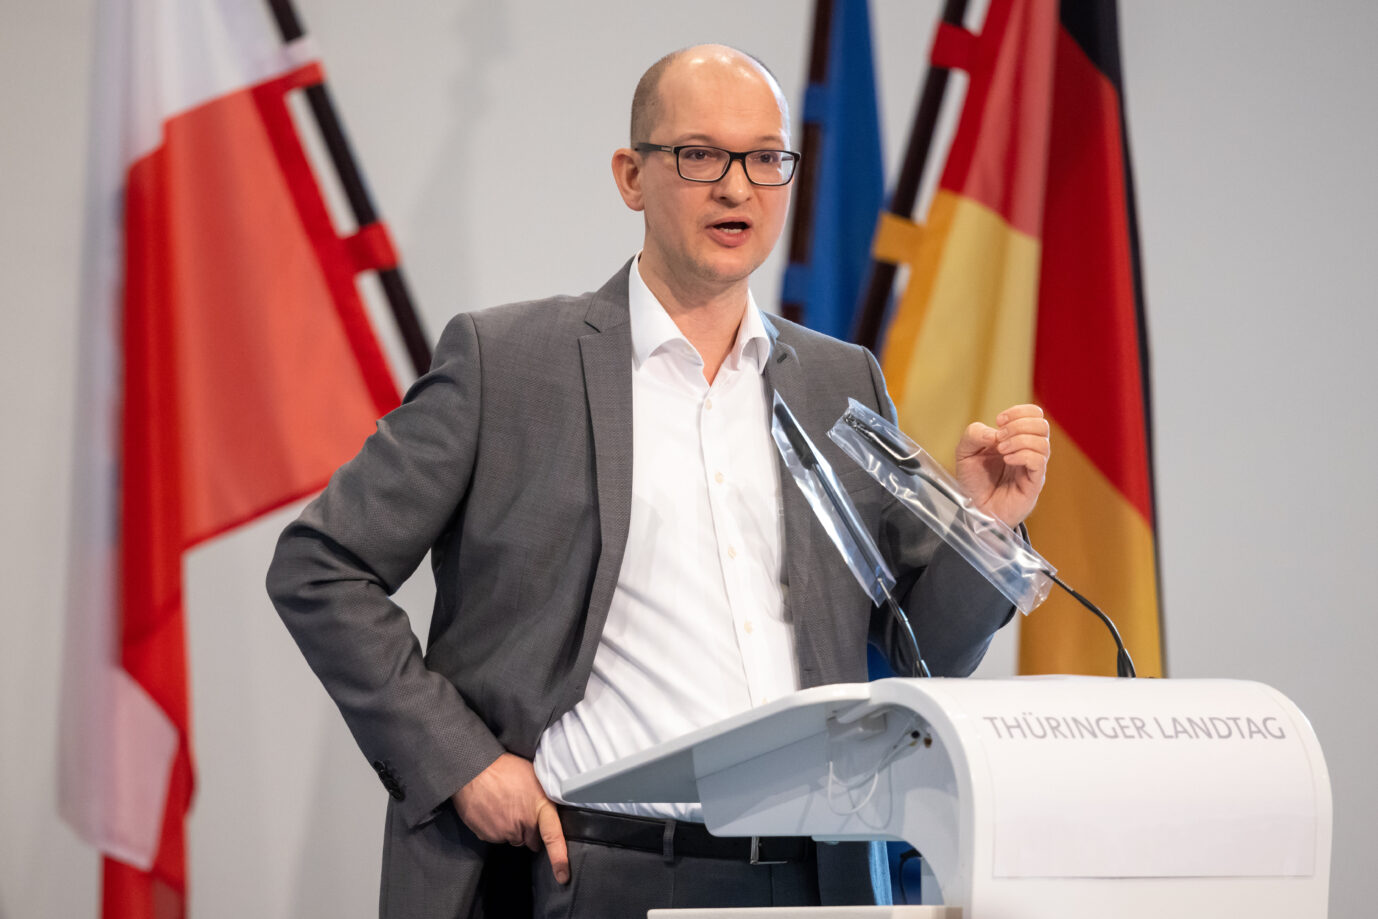 Der Thüringer AfD-Co-Chef Stefan Möller: Gegenüber dem Verfassungsschutz gerate man schnell in die Position des Unterlegenen